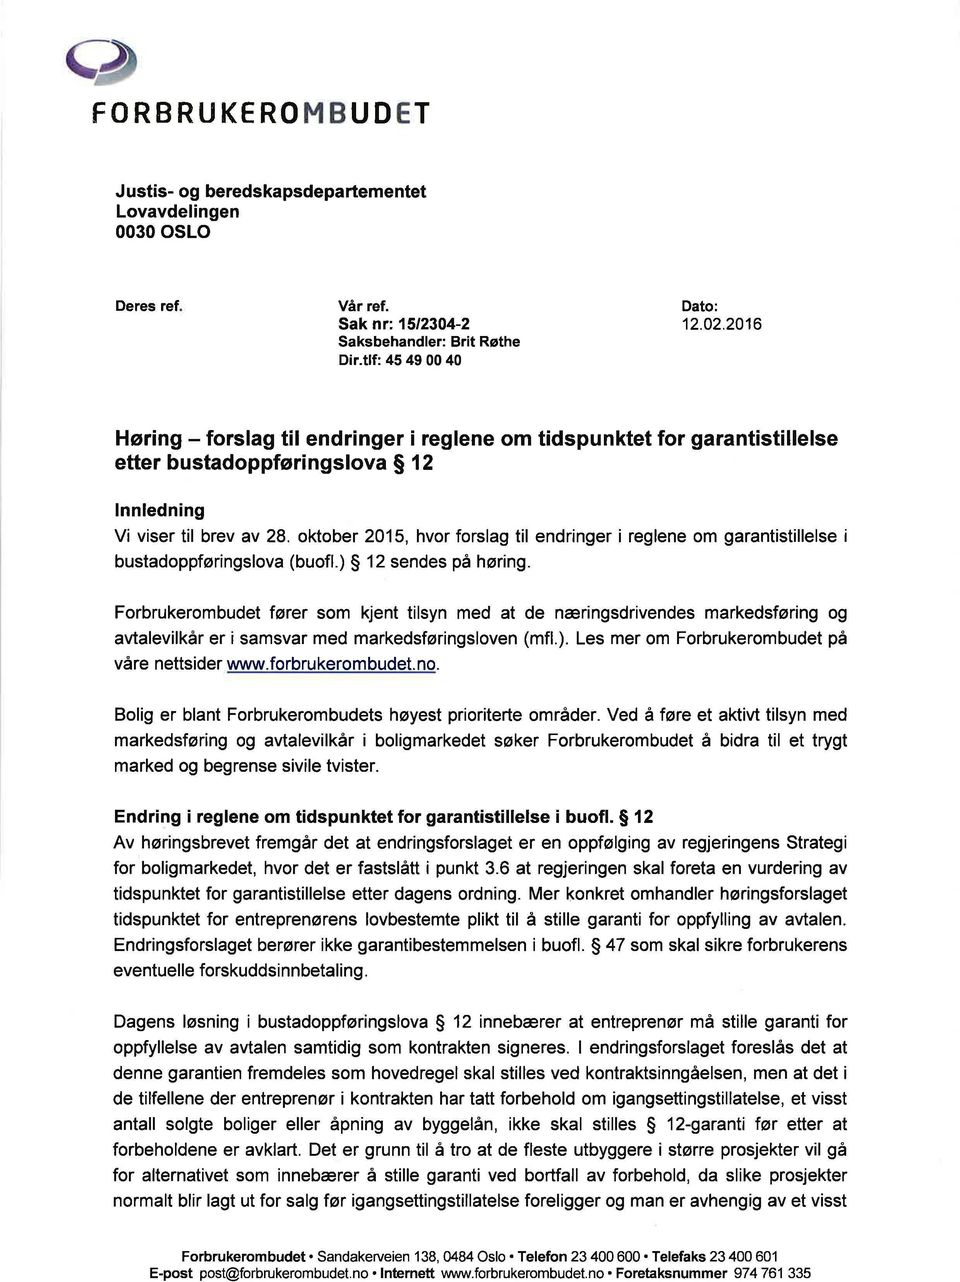 oktober 2015, hvor forslag til endringer i reglene om garantistillelse i bustadoppføringslava (buofl.) 12 sendes på høring.